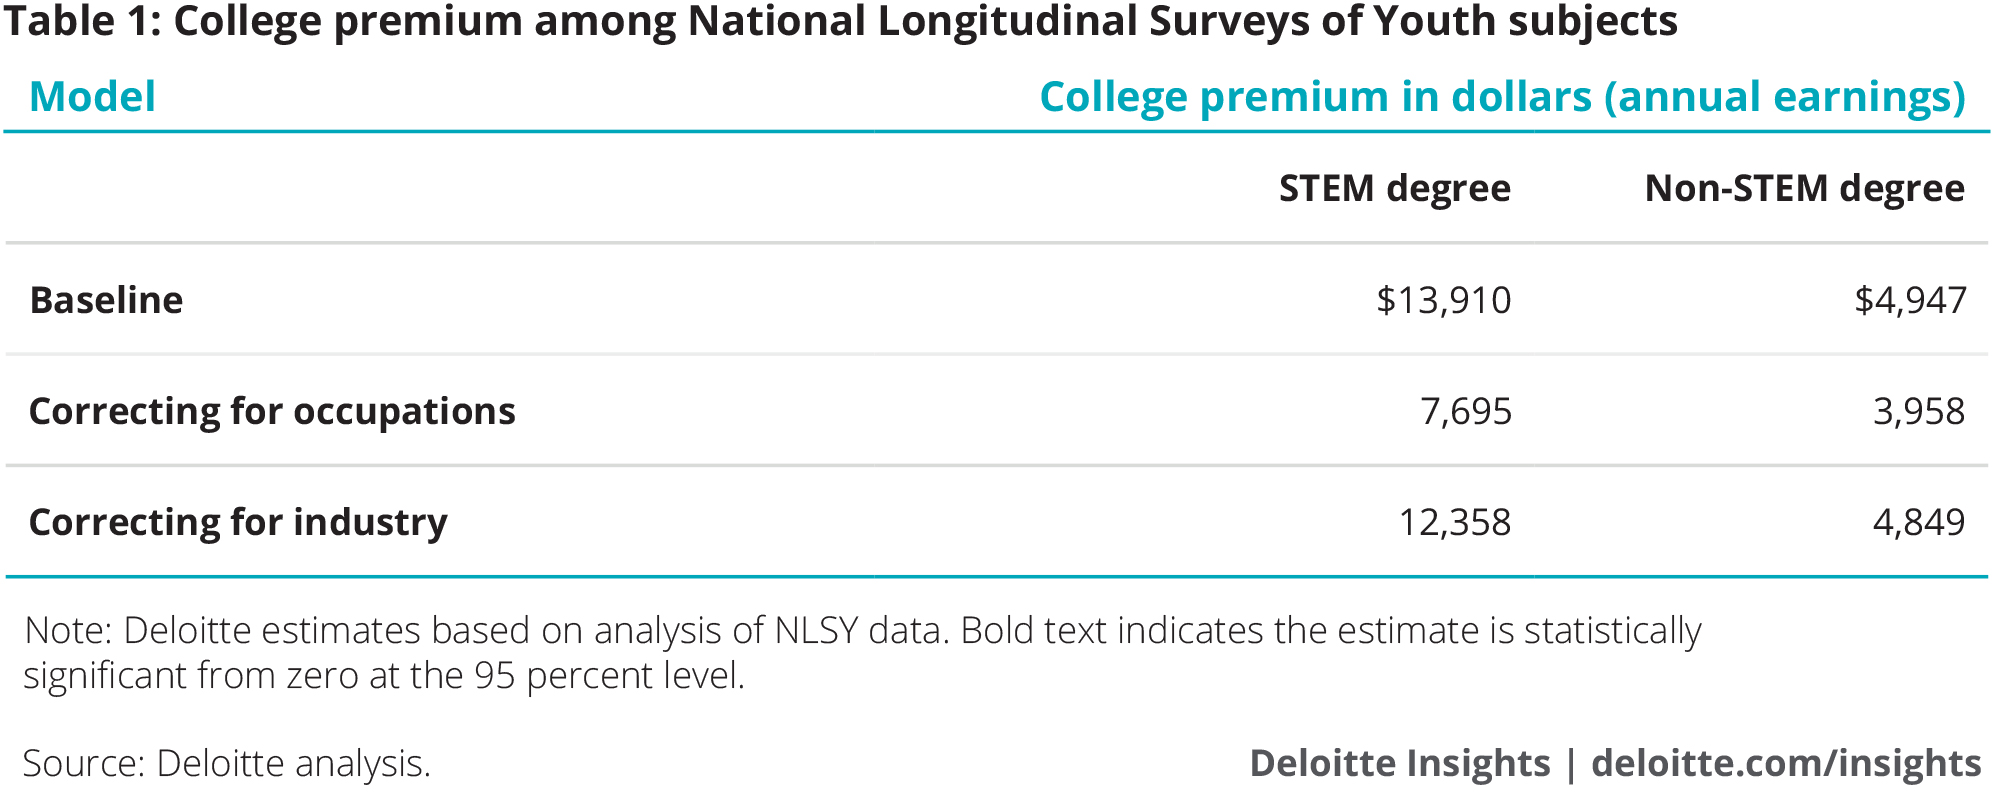 College premium among National Longitudinal Surveys of Youth subjects